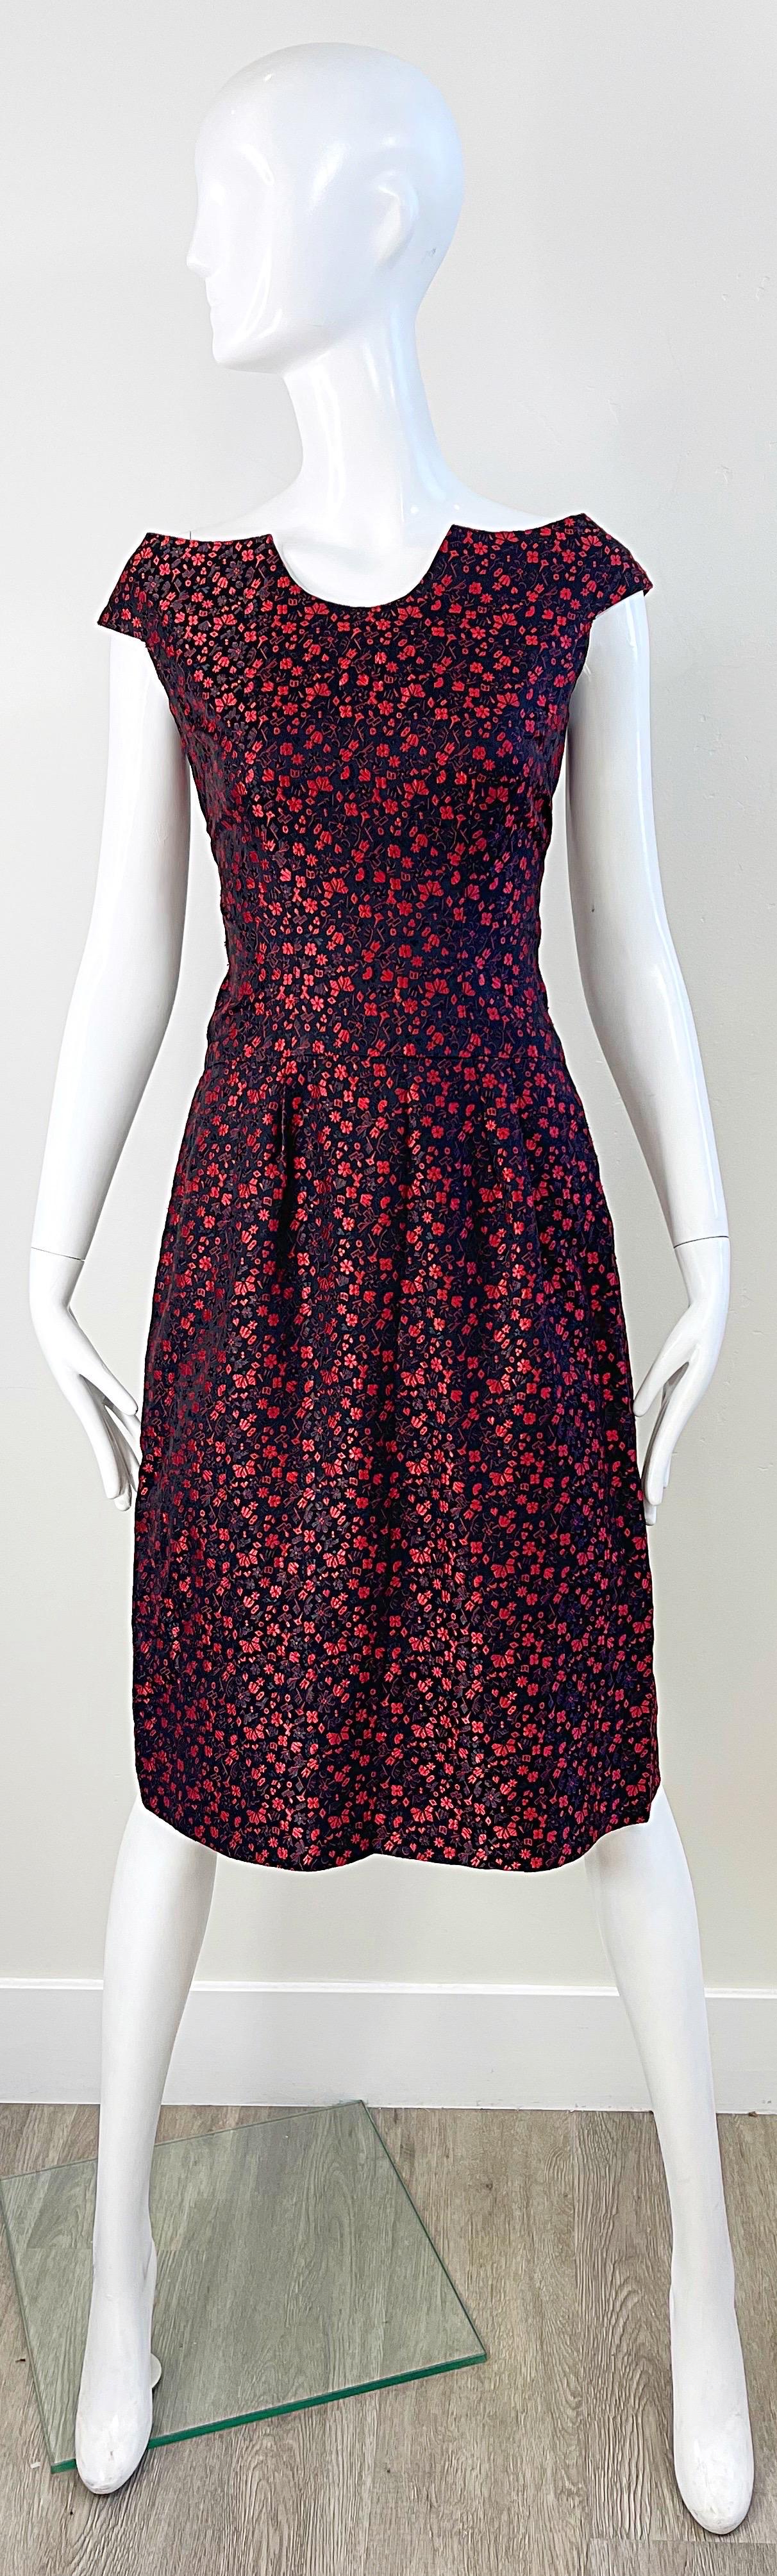 Magnifique robe de cocktail vintage de la fin des années 50 en brocart de soie noir et rouge avec épaulettes ! Des fleurs et des origamis imprimés en rouge à lèvres. Fermeture à glissière entièrement métallique dans le dos avec fermeture à crochet.